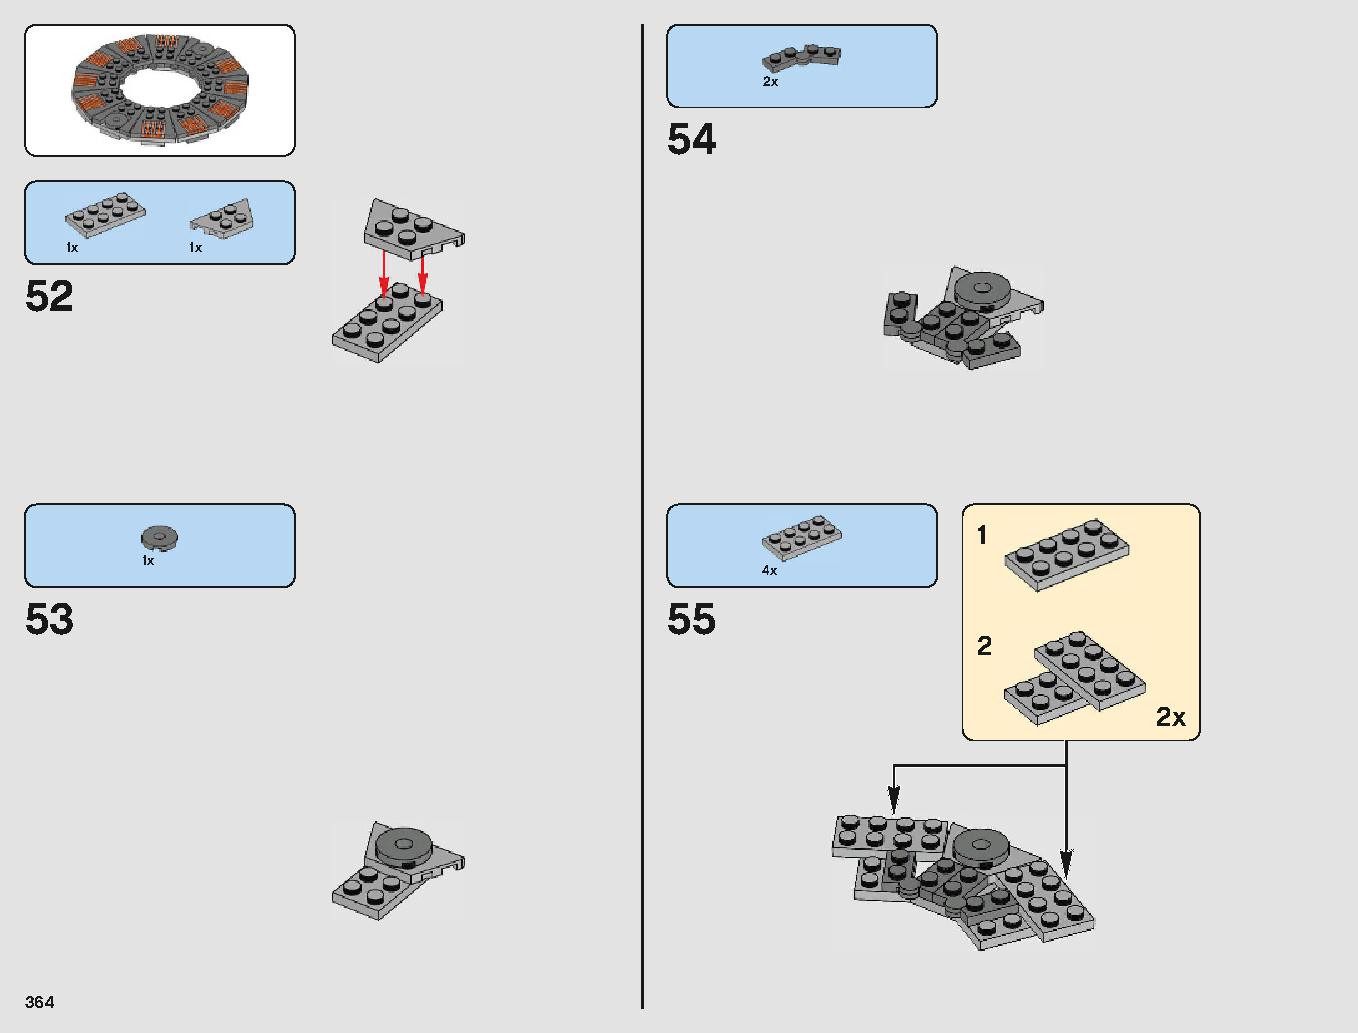 クラウド・シティ 75222 レゴの商品情報 レゴの説明書・組立方法 364 page